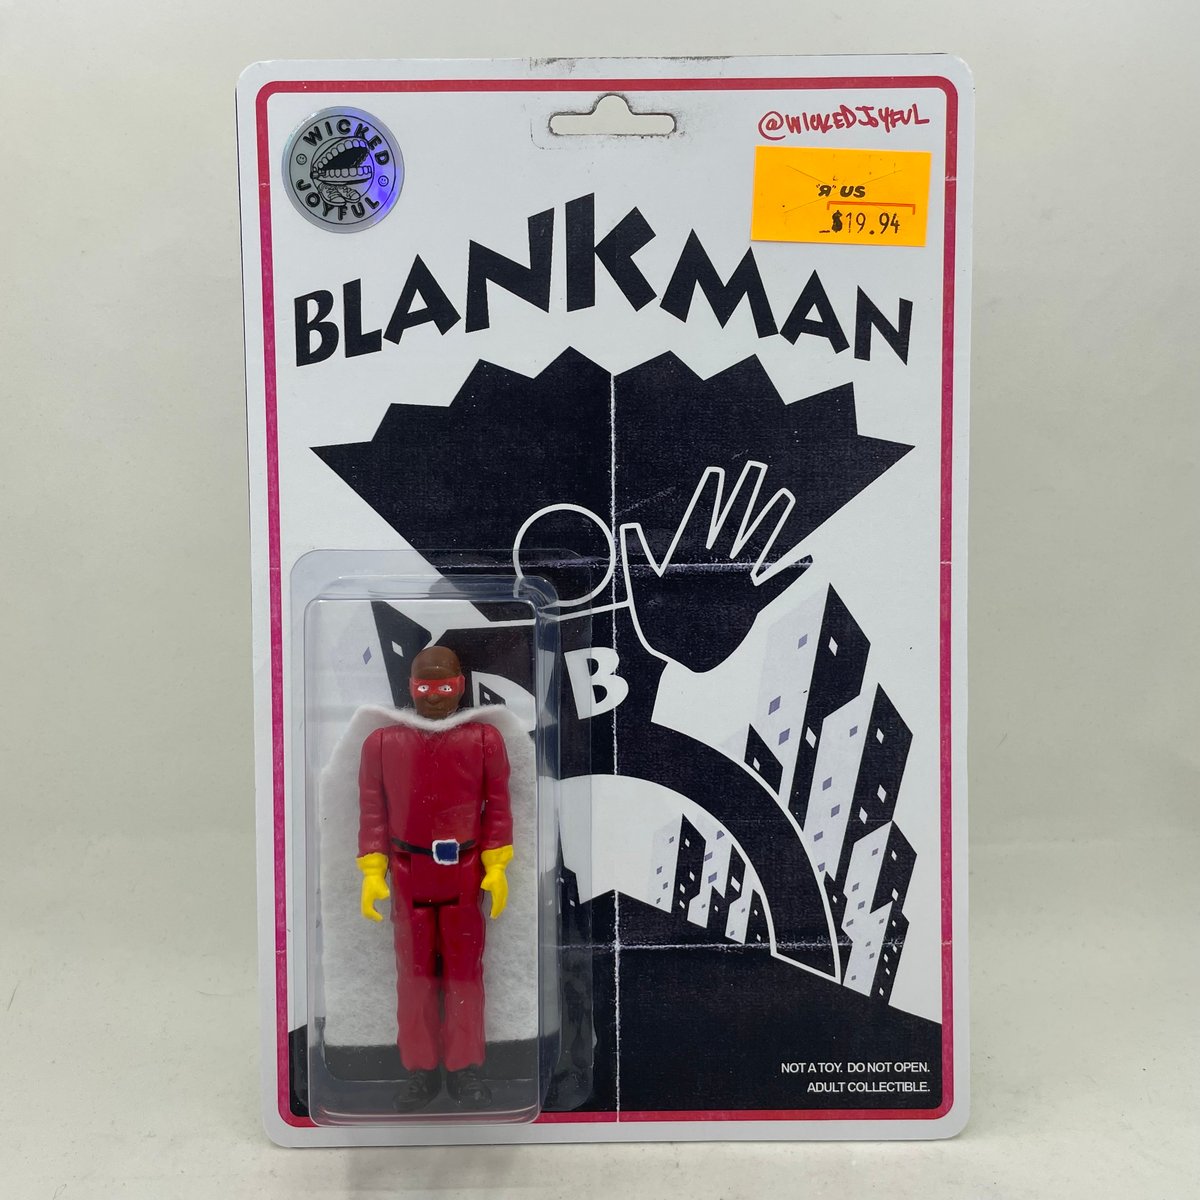 Blankman